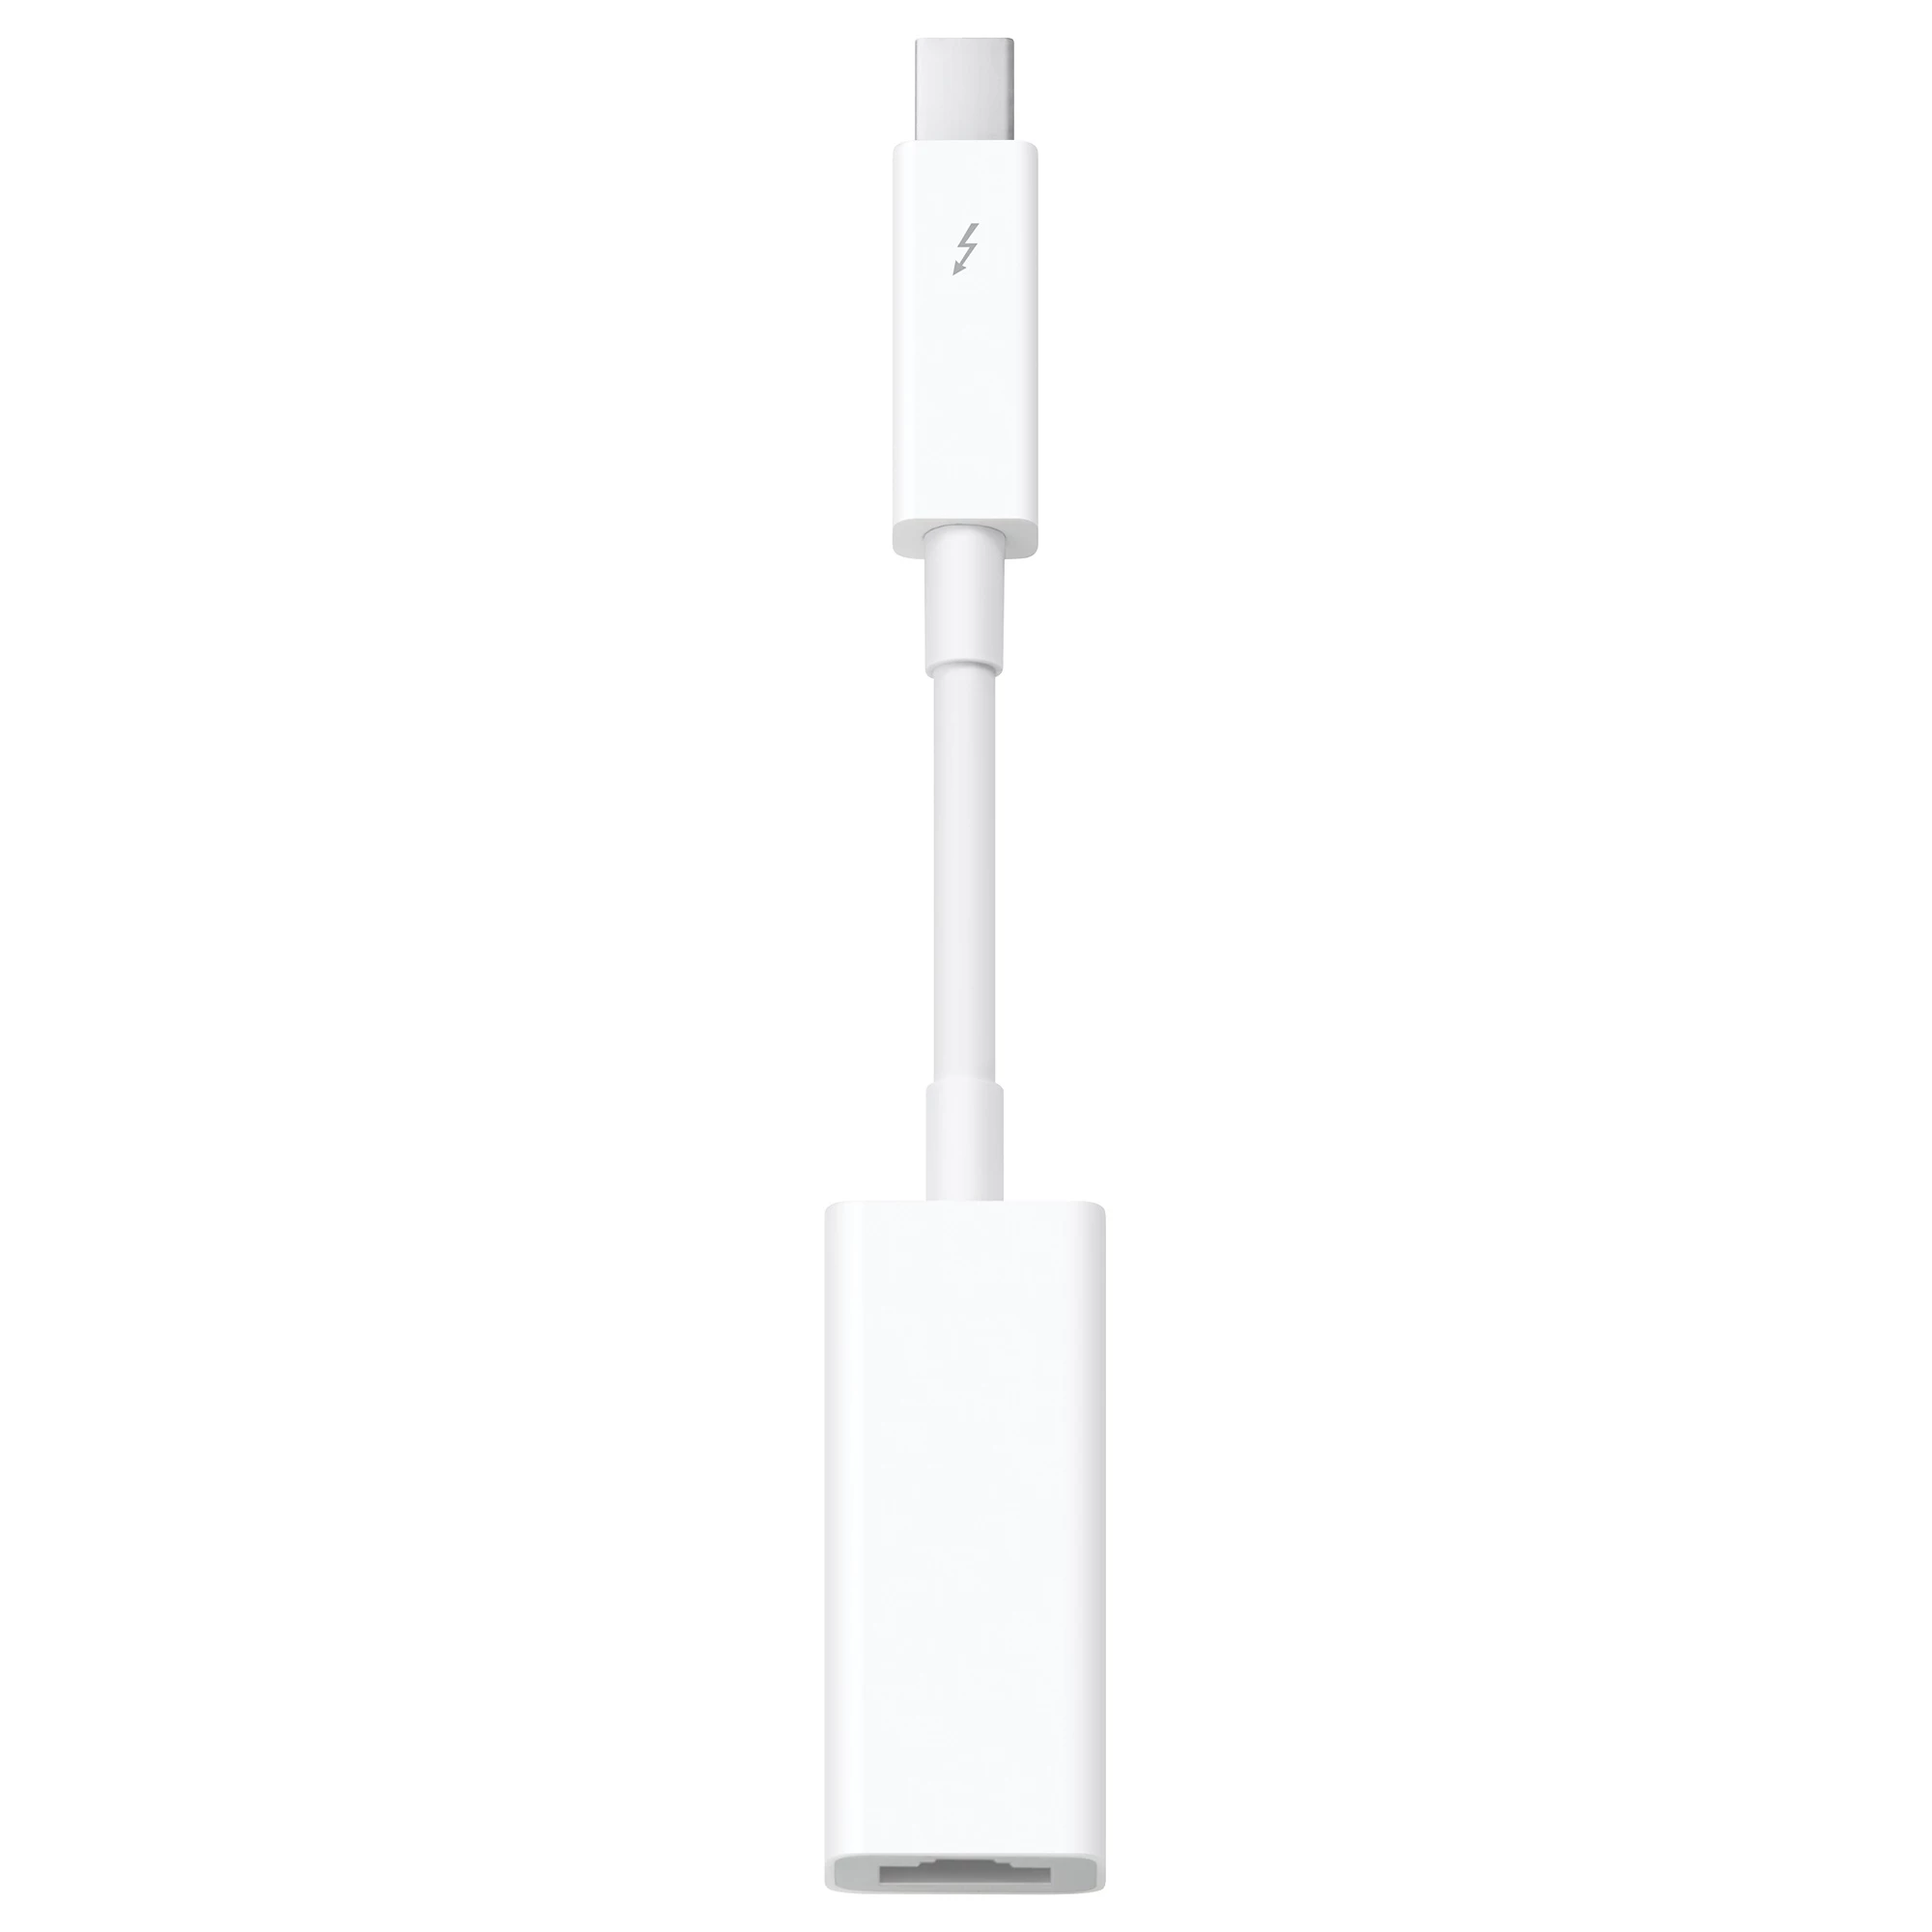 Apple Thunderbolt to Gigabit Ethernet (MD463)